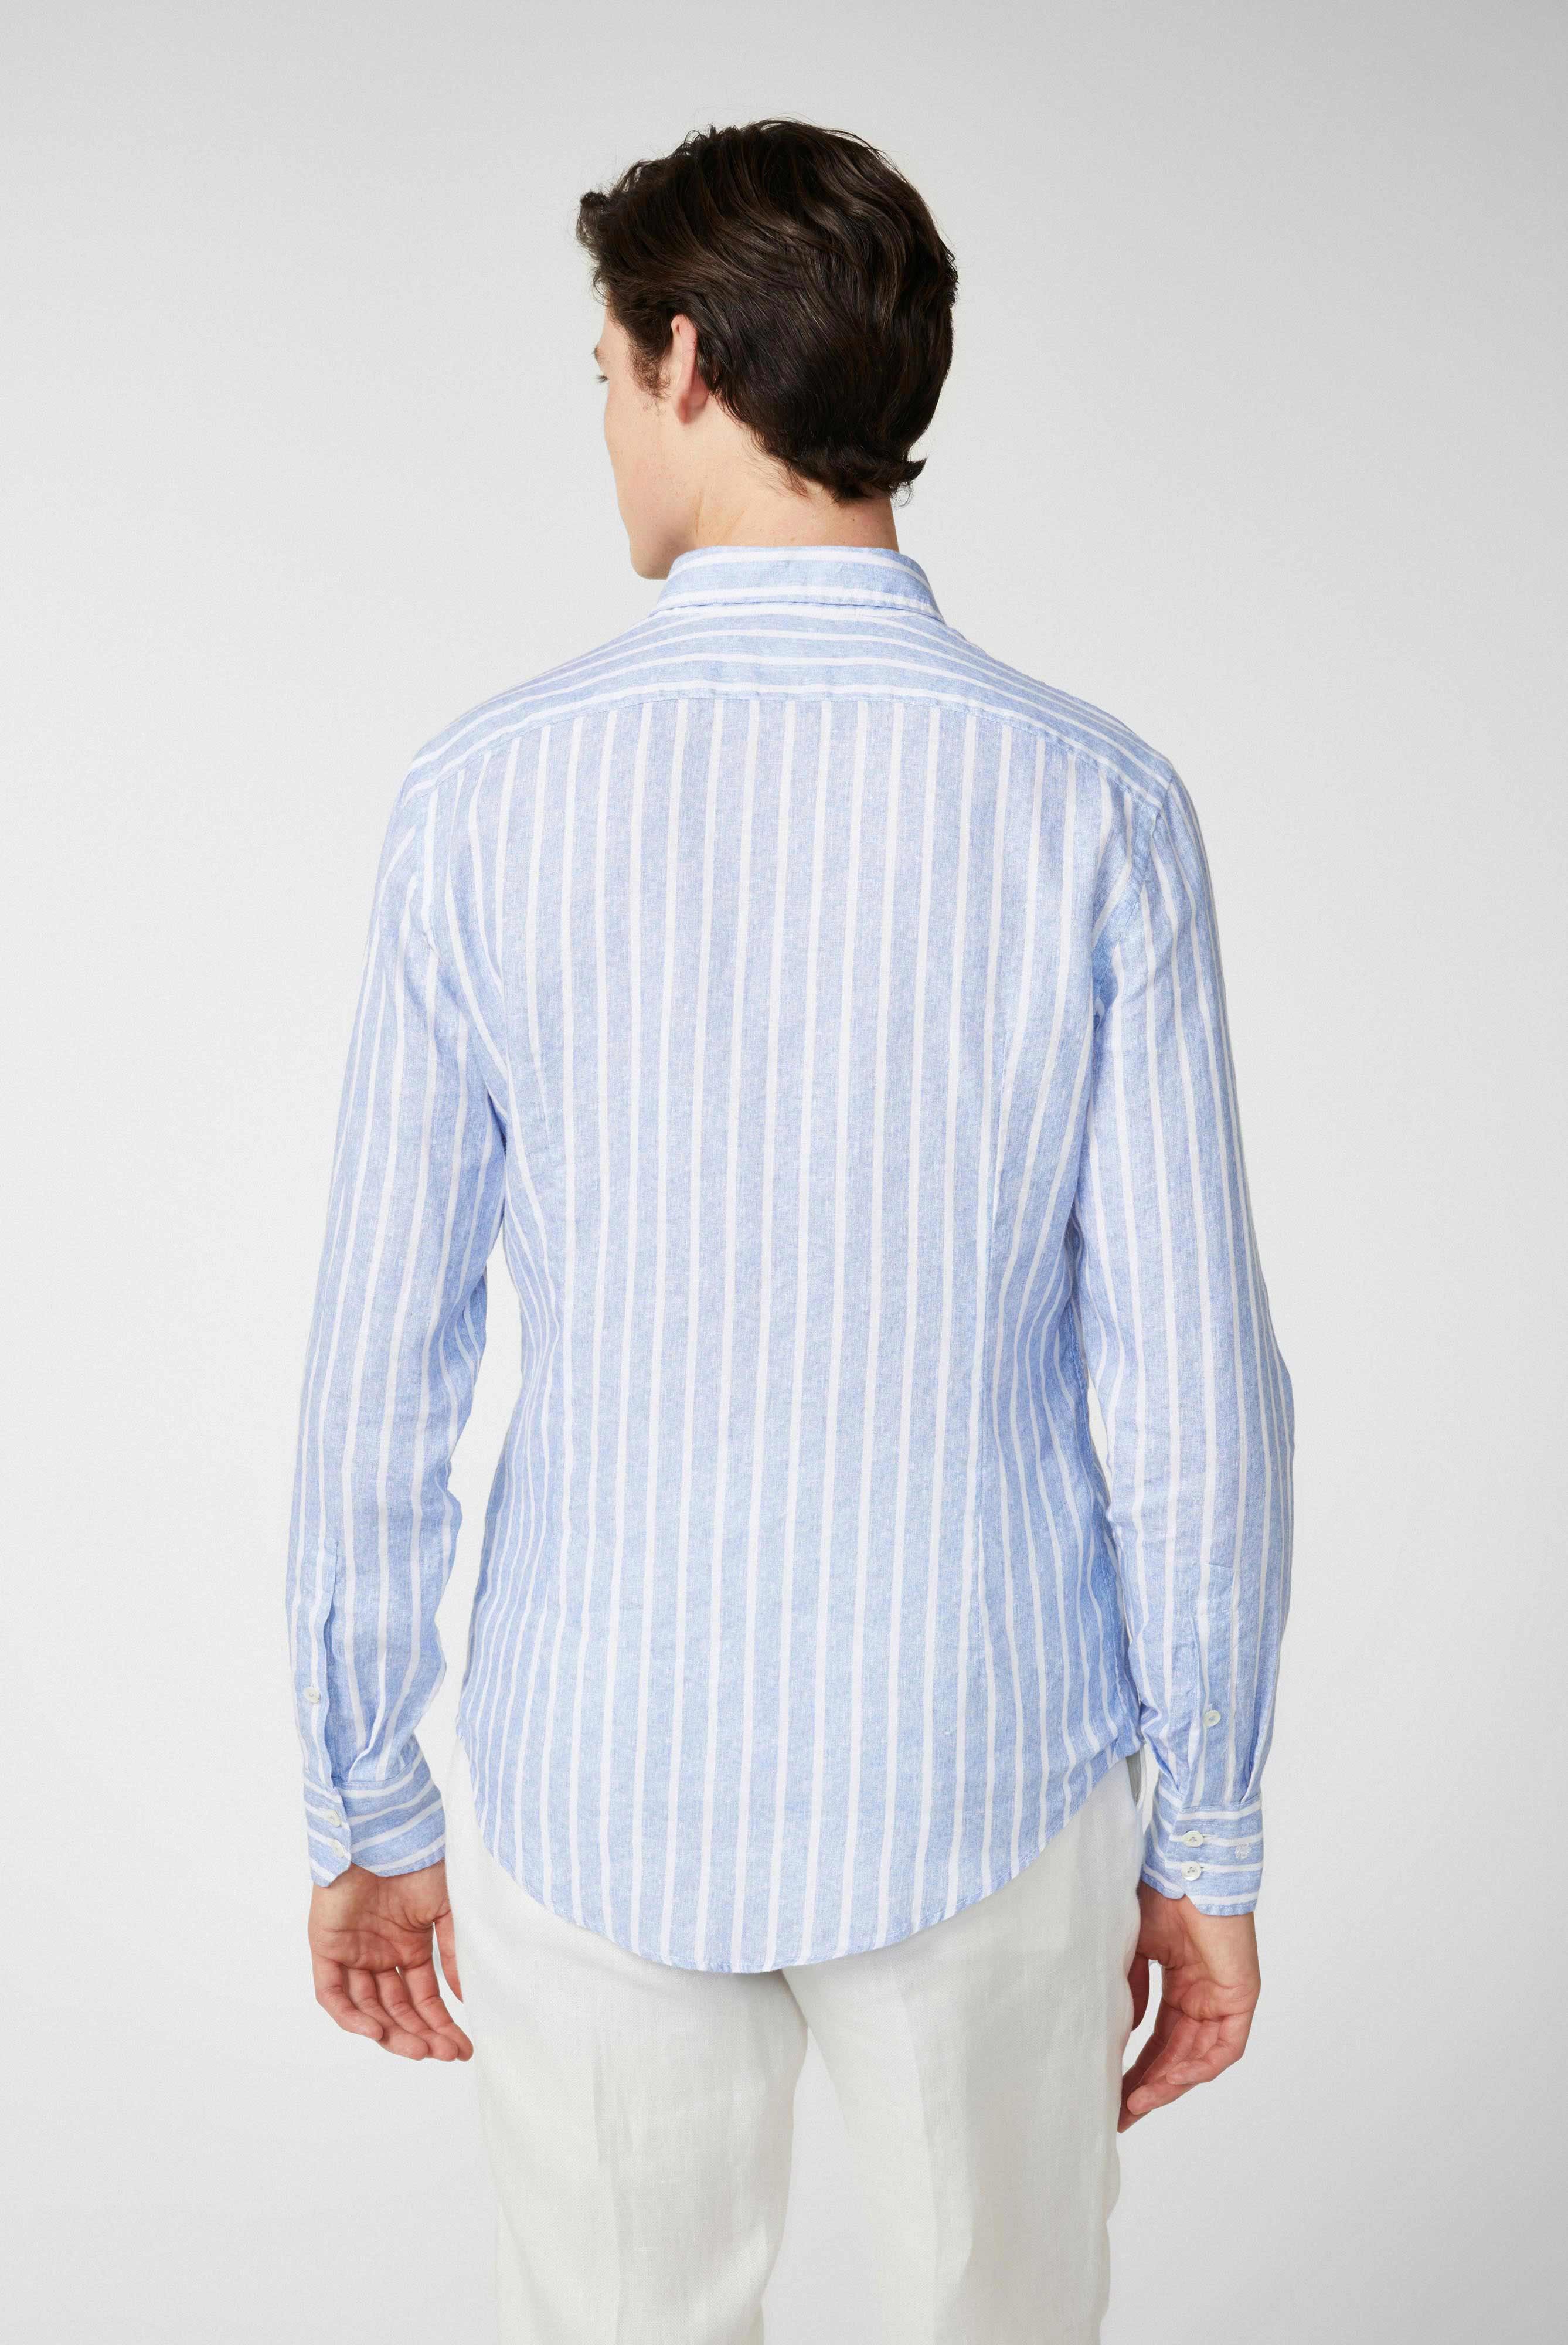 Casual Hemden+Button-Down-Hemd aus Leinen mit Streifendruck+20.2013.MB.170238.760.39